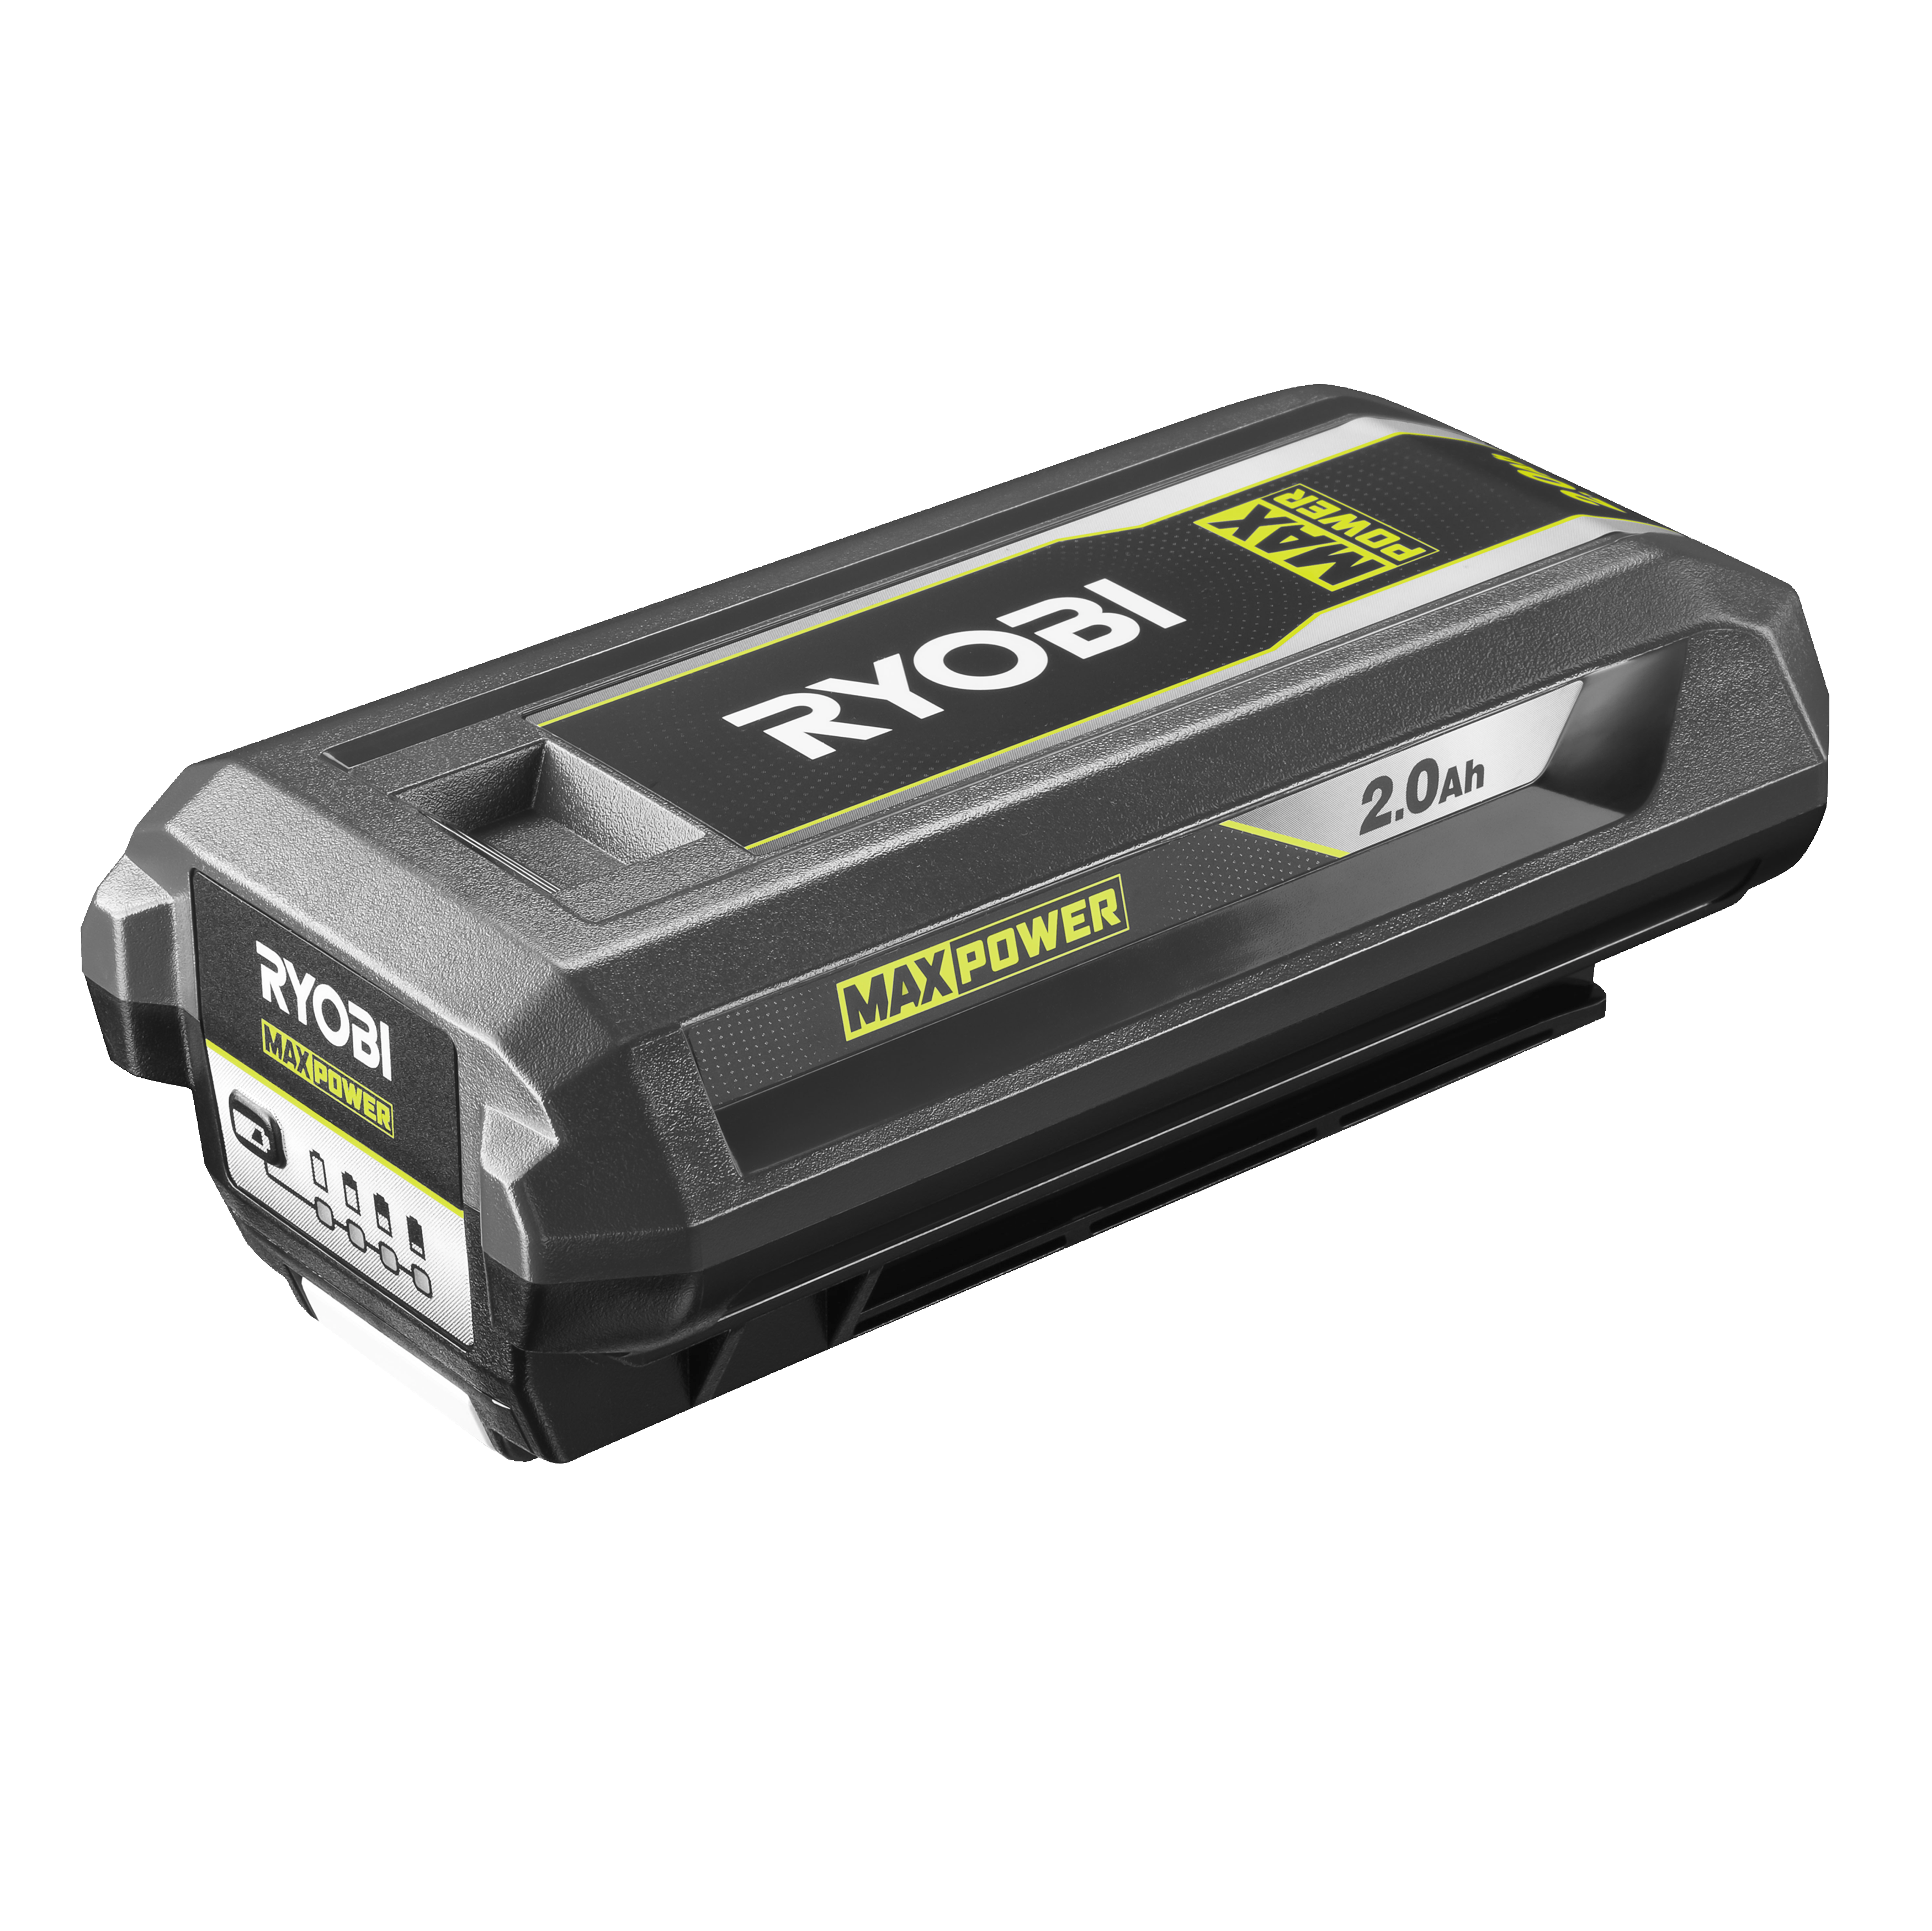 RYOBI MAX POWER Transformateur sans fil 36V : 300 W-500 W - 3 ports: 1  électrique EU + 1 USB-A + 1 USB-C - Lampe LED - Sans batterie - La Poste